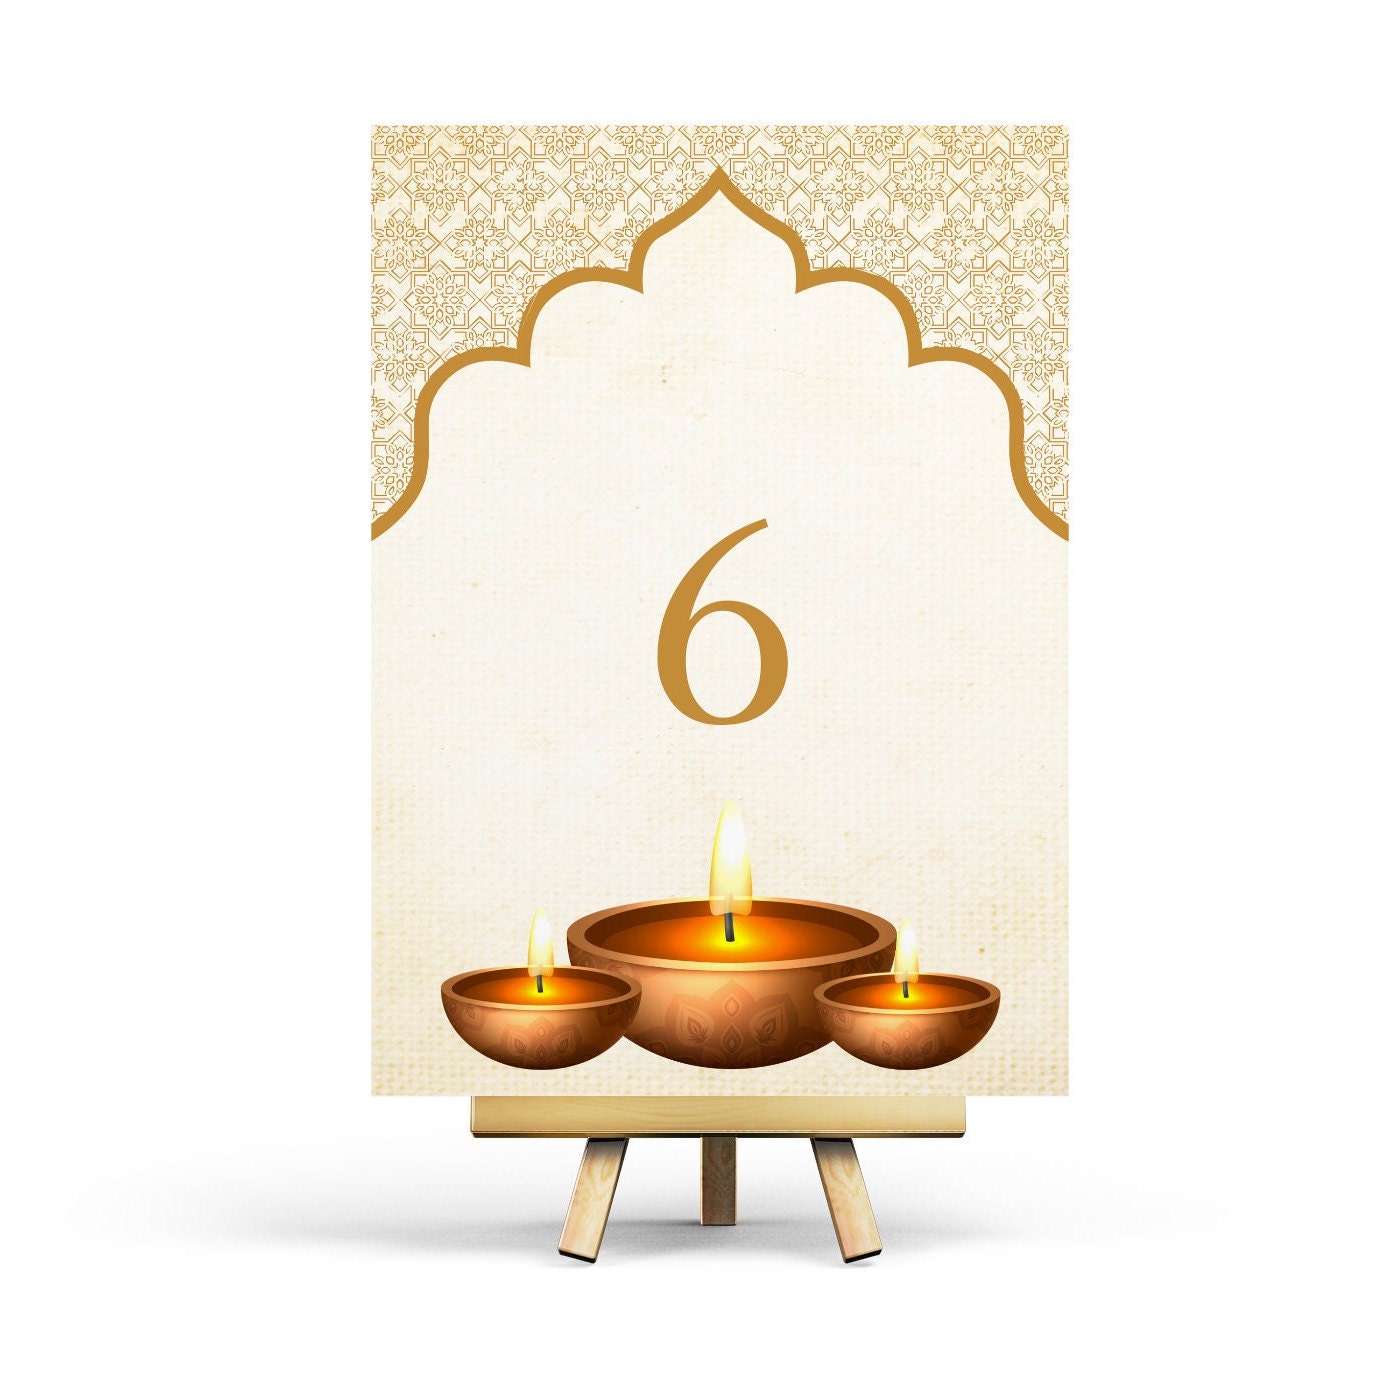 Bộ số bàn ăn những viên vàng Diwali sẽ khiến không gian của bạn trở nên rực rỡ và ấm áp. Hãy sử dụng bộ số bàn ăn này để tăng thêm sự trang trọng cho bữa tiệc của bạn.